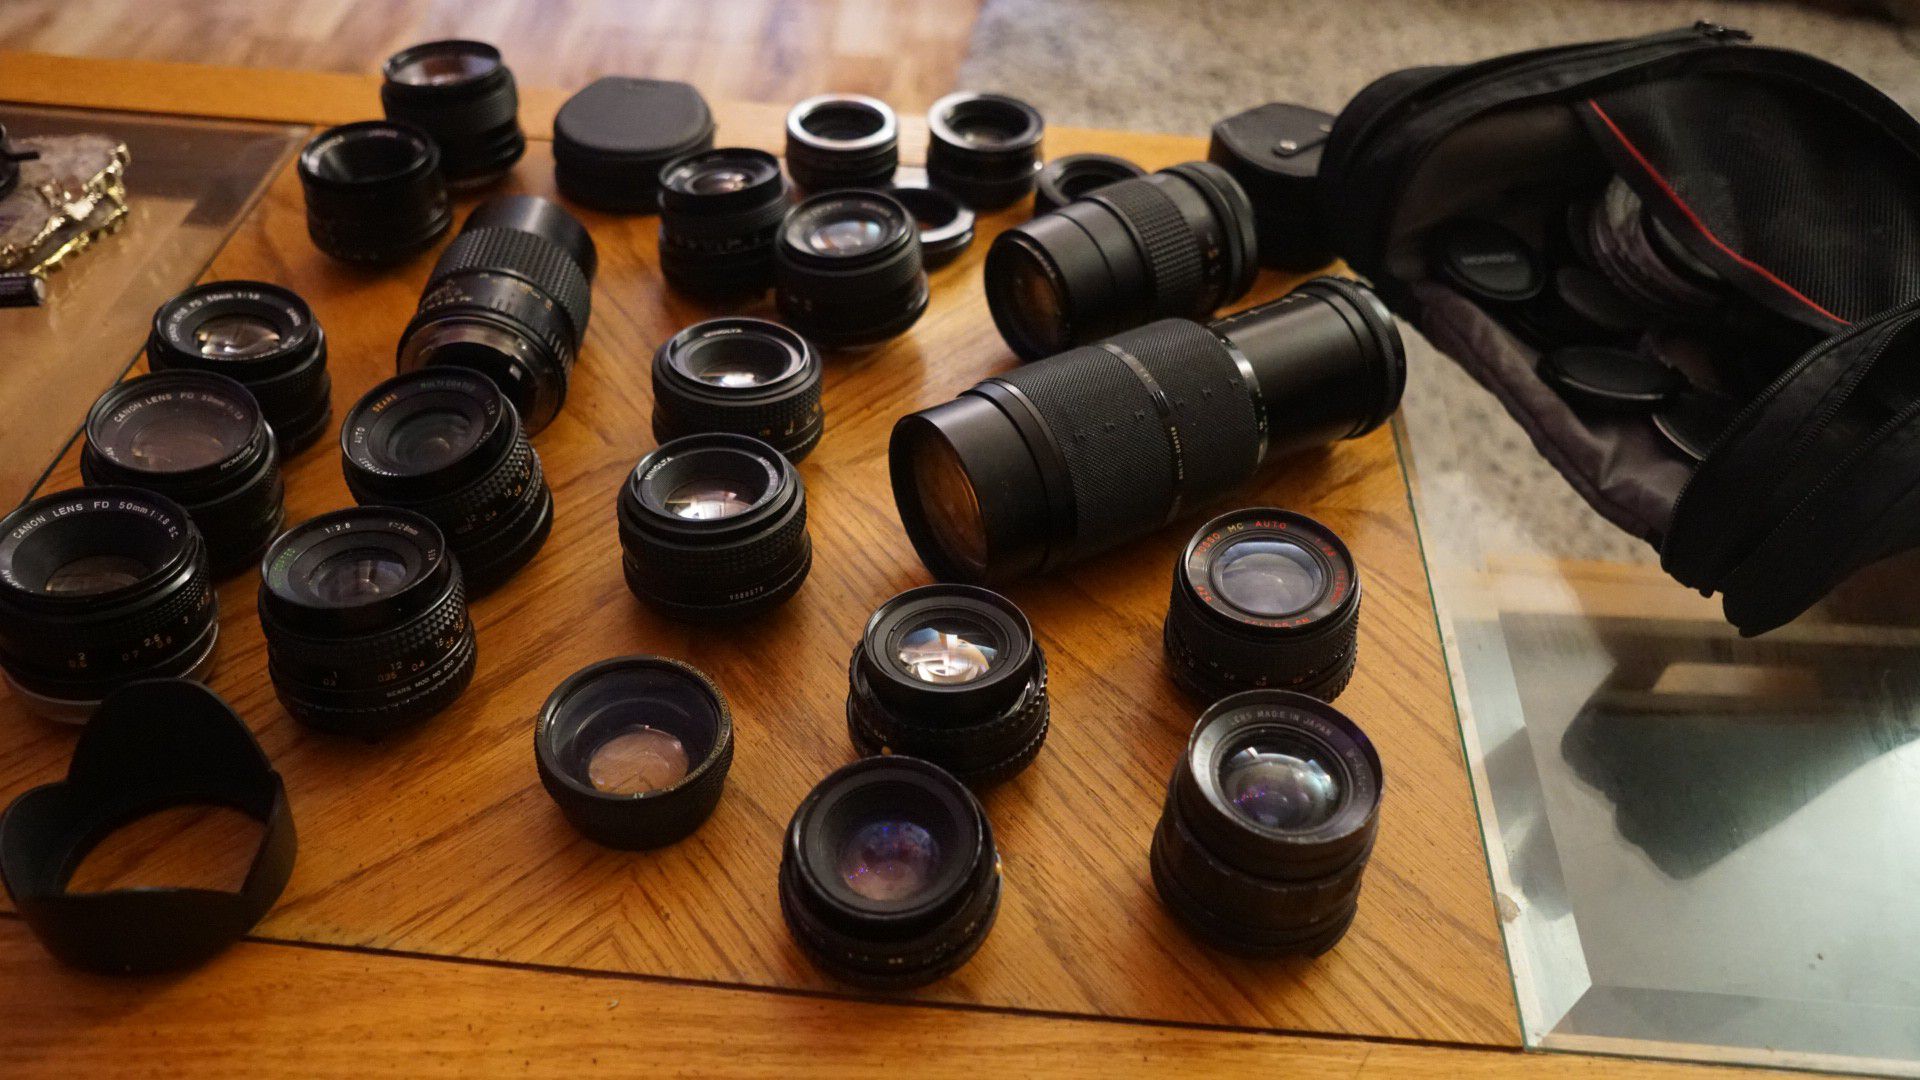 Huge lot of 19 vintage SLR lenses - Canon, Minolta, Sigma, Yakinon